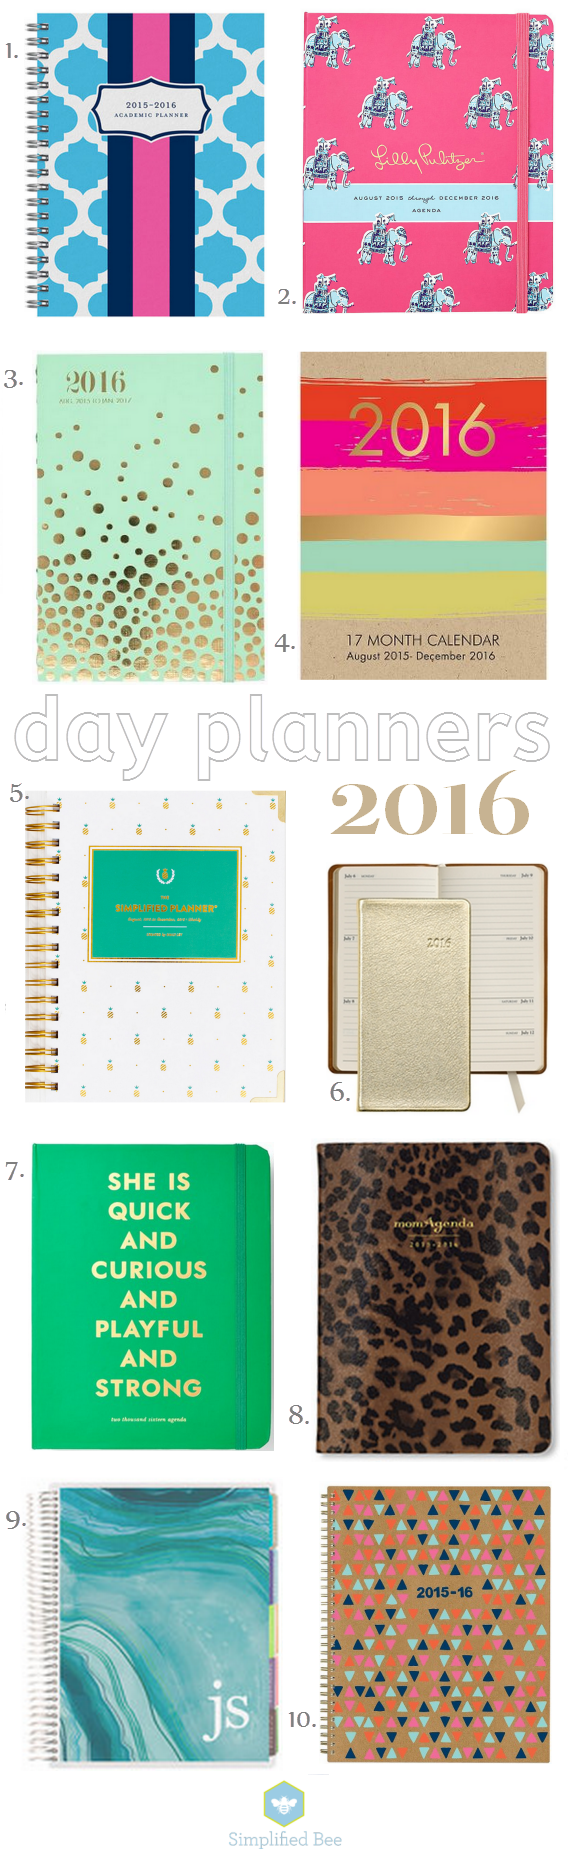 best stylish planner 2016 // www.simplifiedbee.com #2016 #planners